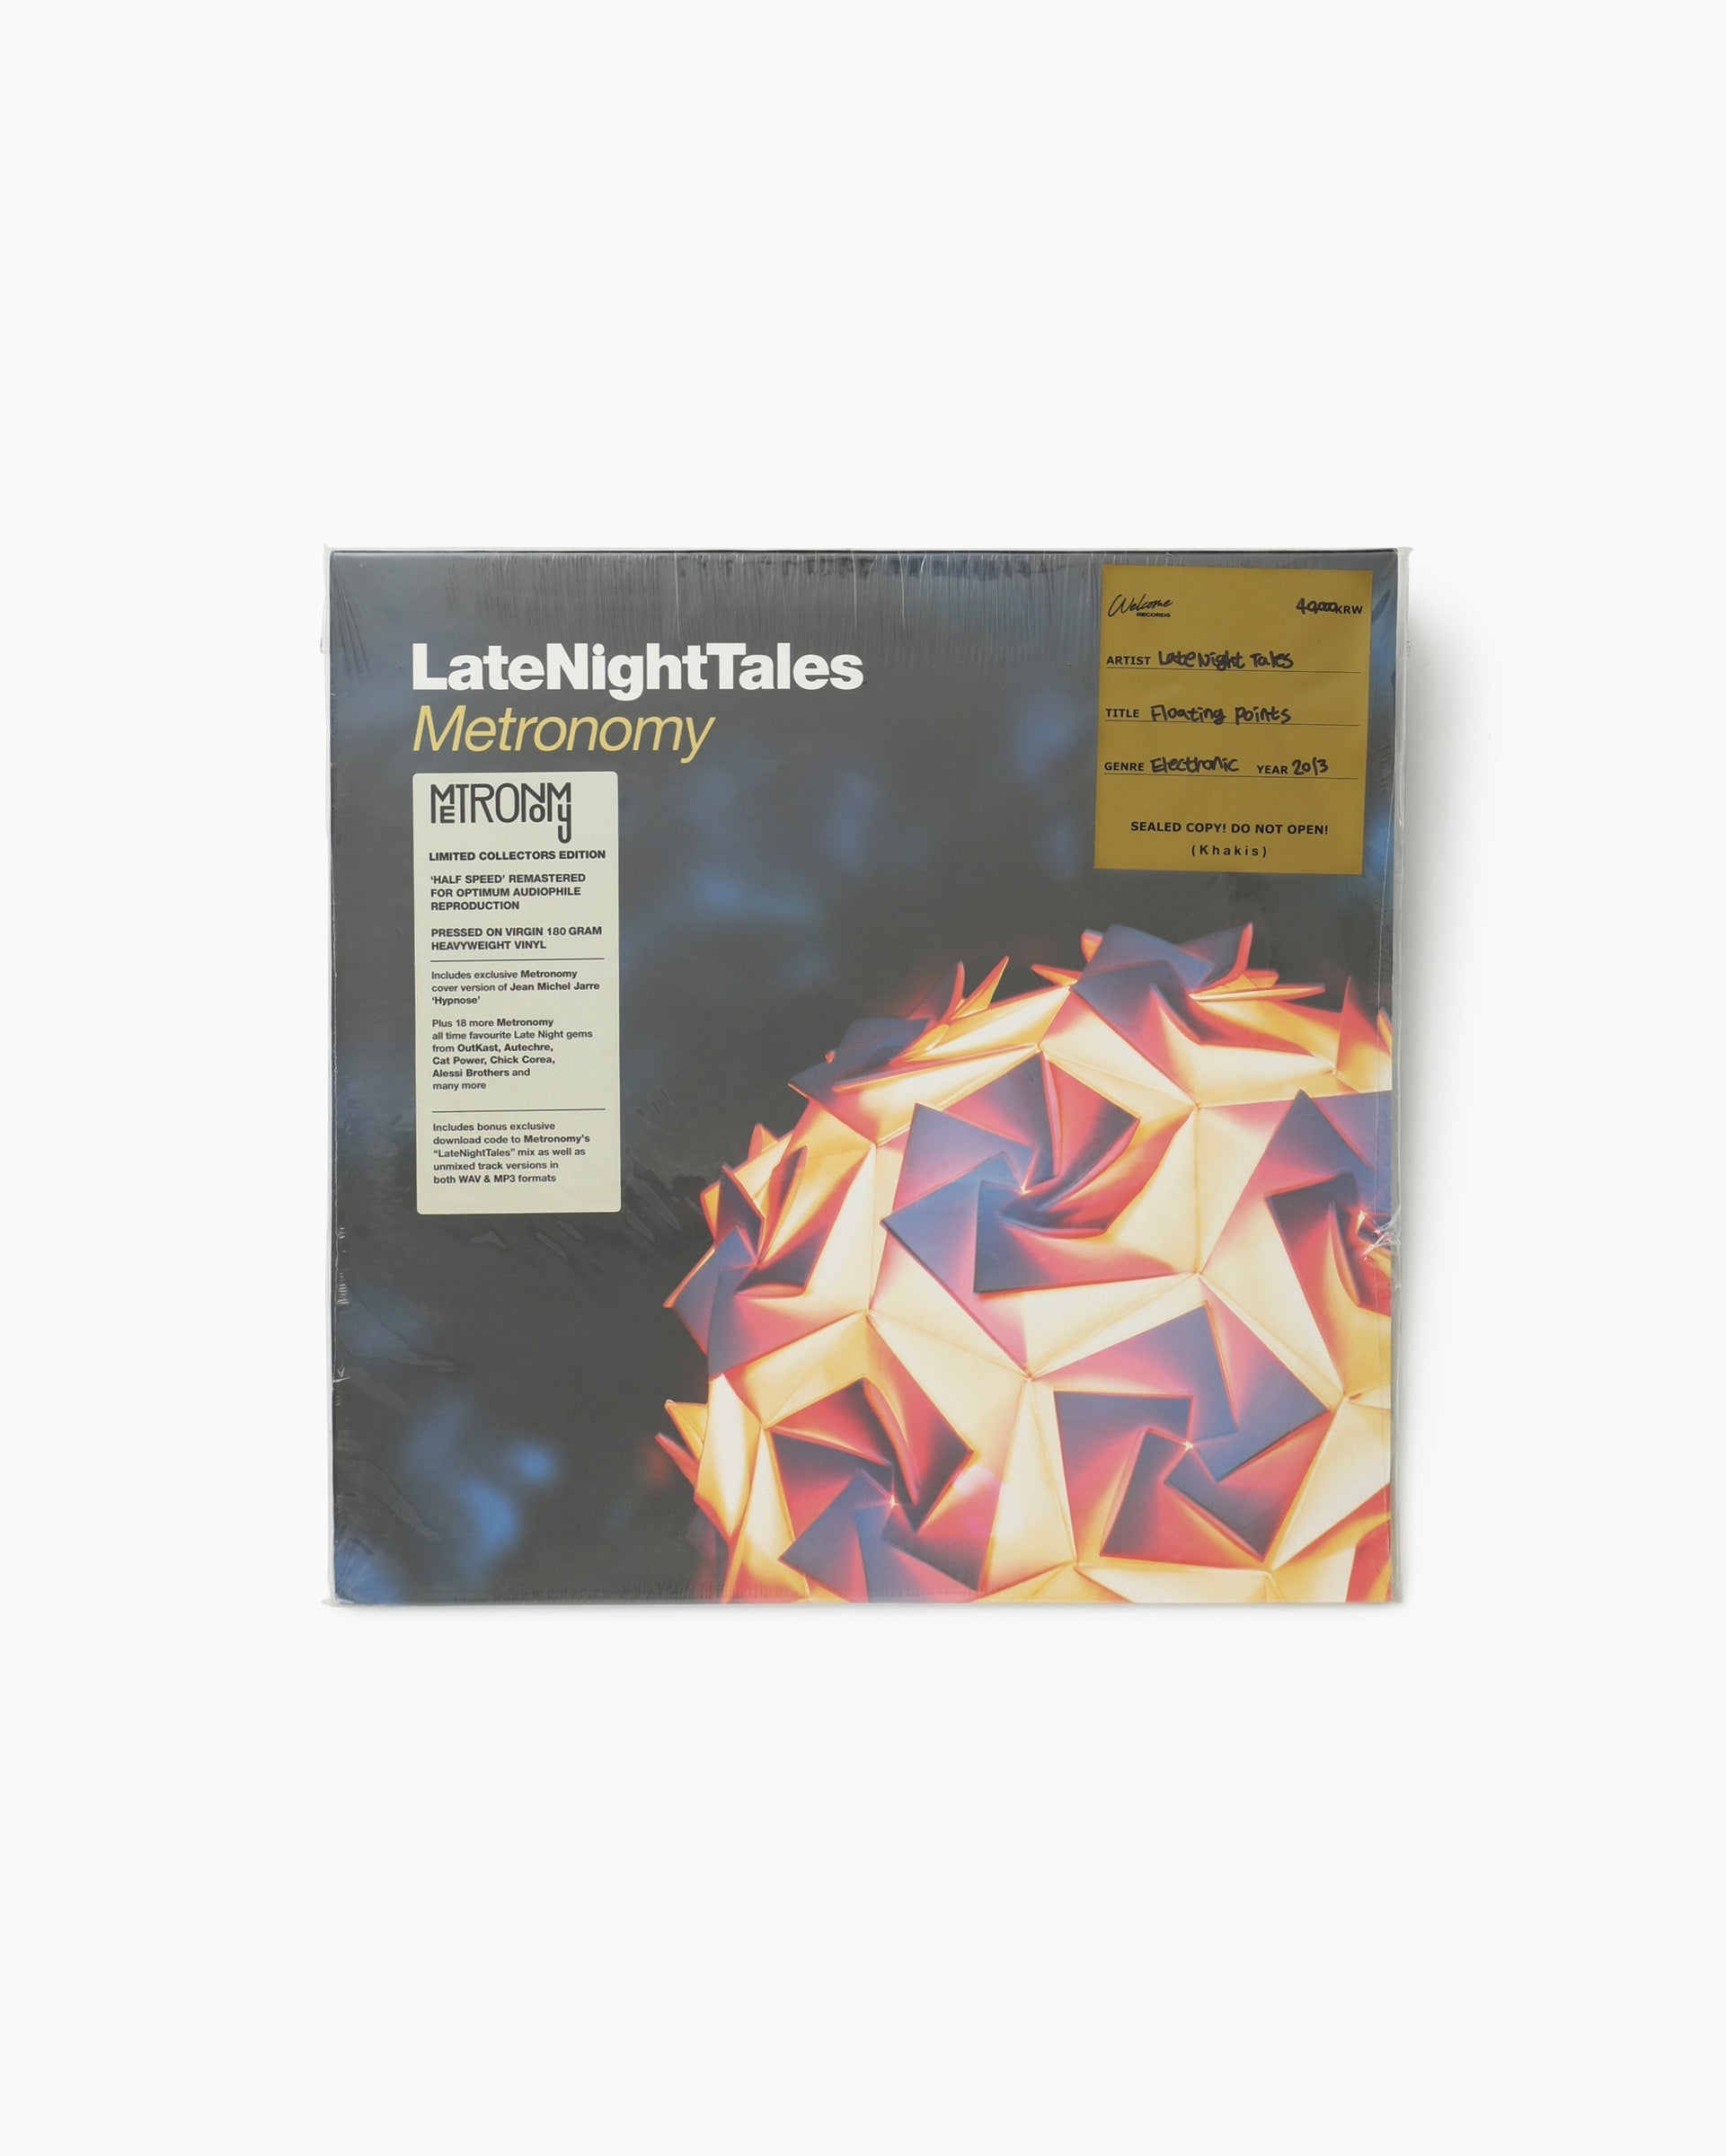 LateNightTales – Metronomy